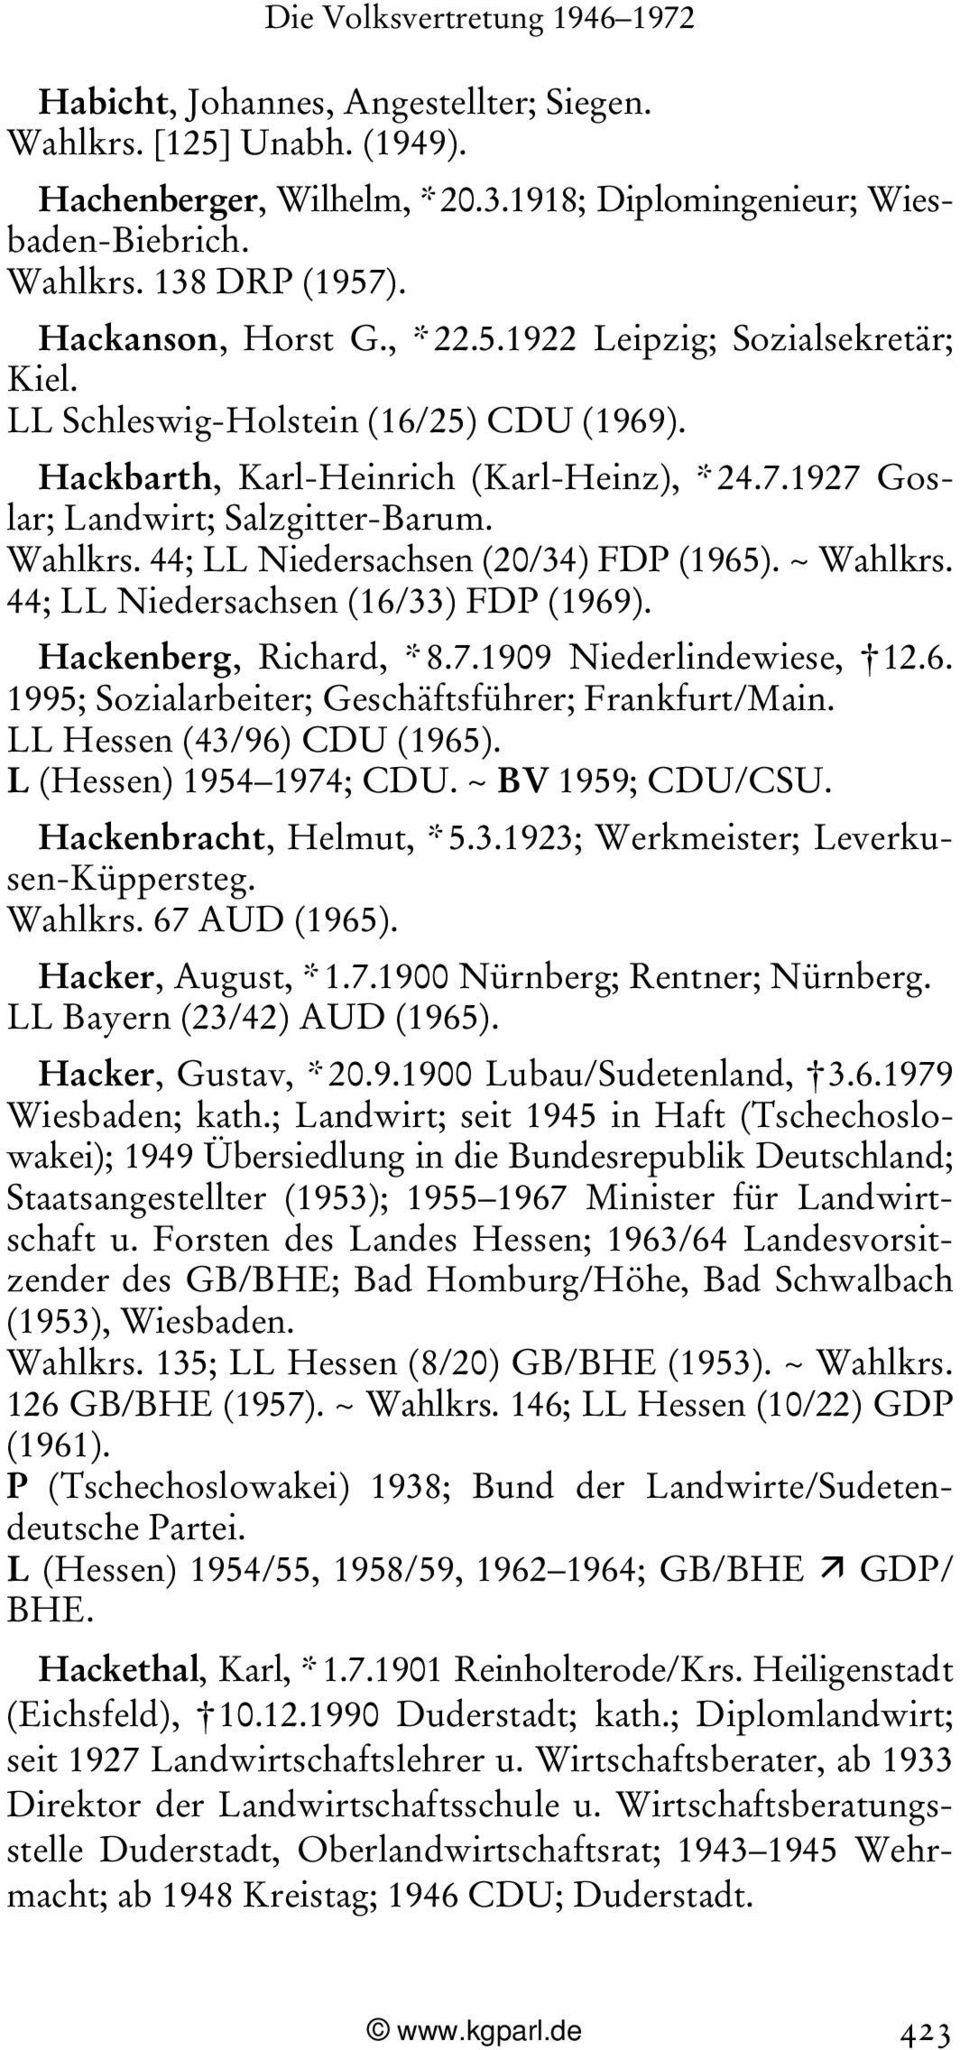 44; LL Niedersachsen (16/33) FDP (1969). Hackenberg, Richard, * 8.7.1909 Niederlindewiese, 12.6. 1995; Sozialarbeiter; Geschäftsführer; Frankfurt/Main. LL Hessen (43/96) CDU (1965).